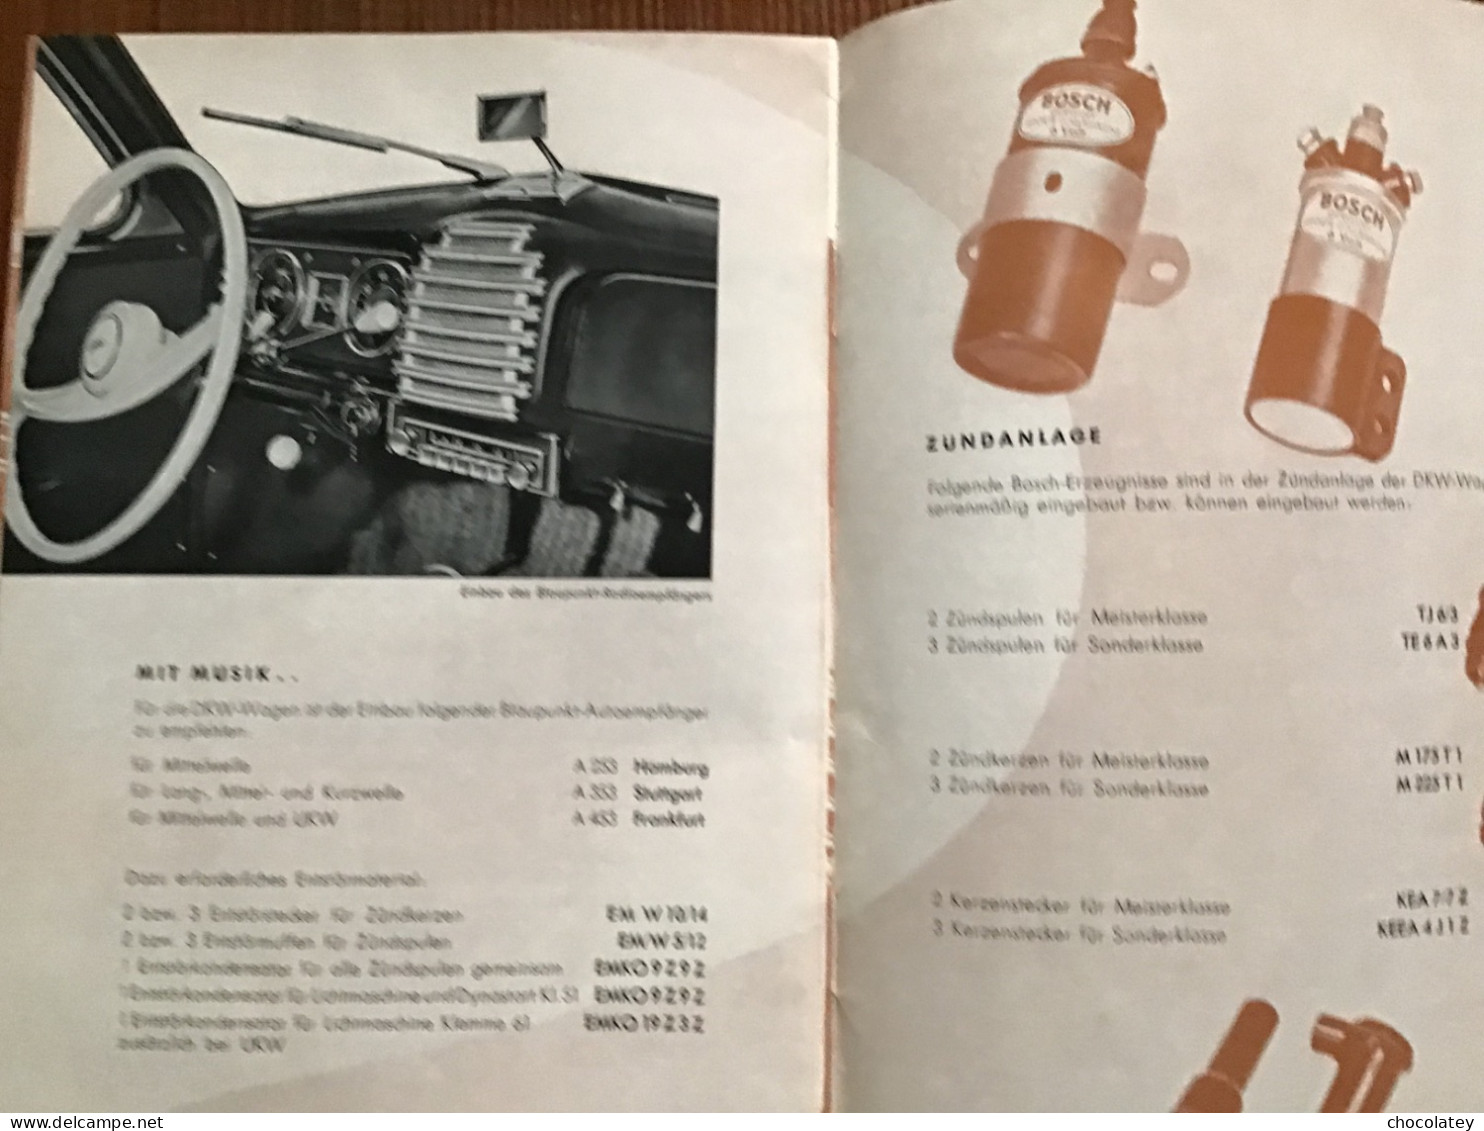 Bosch Im Dkw Automobile 1954 - Techniek